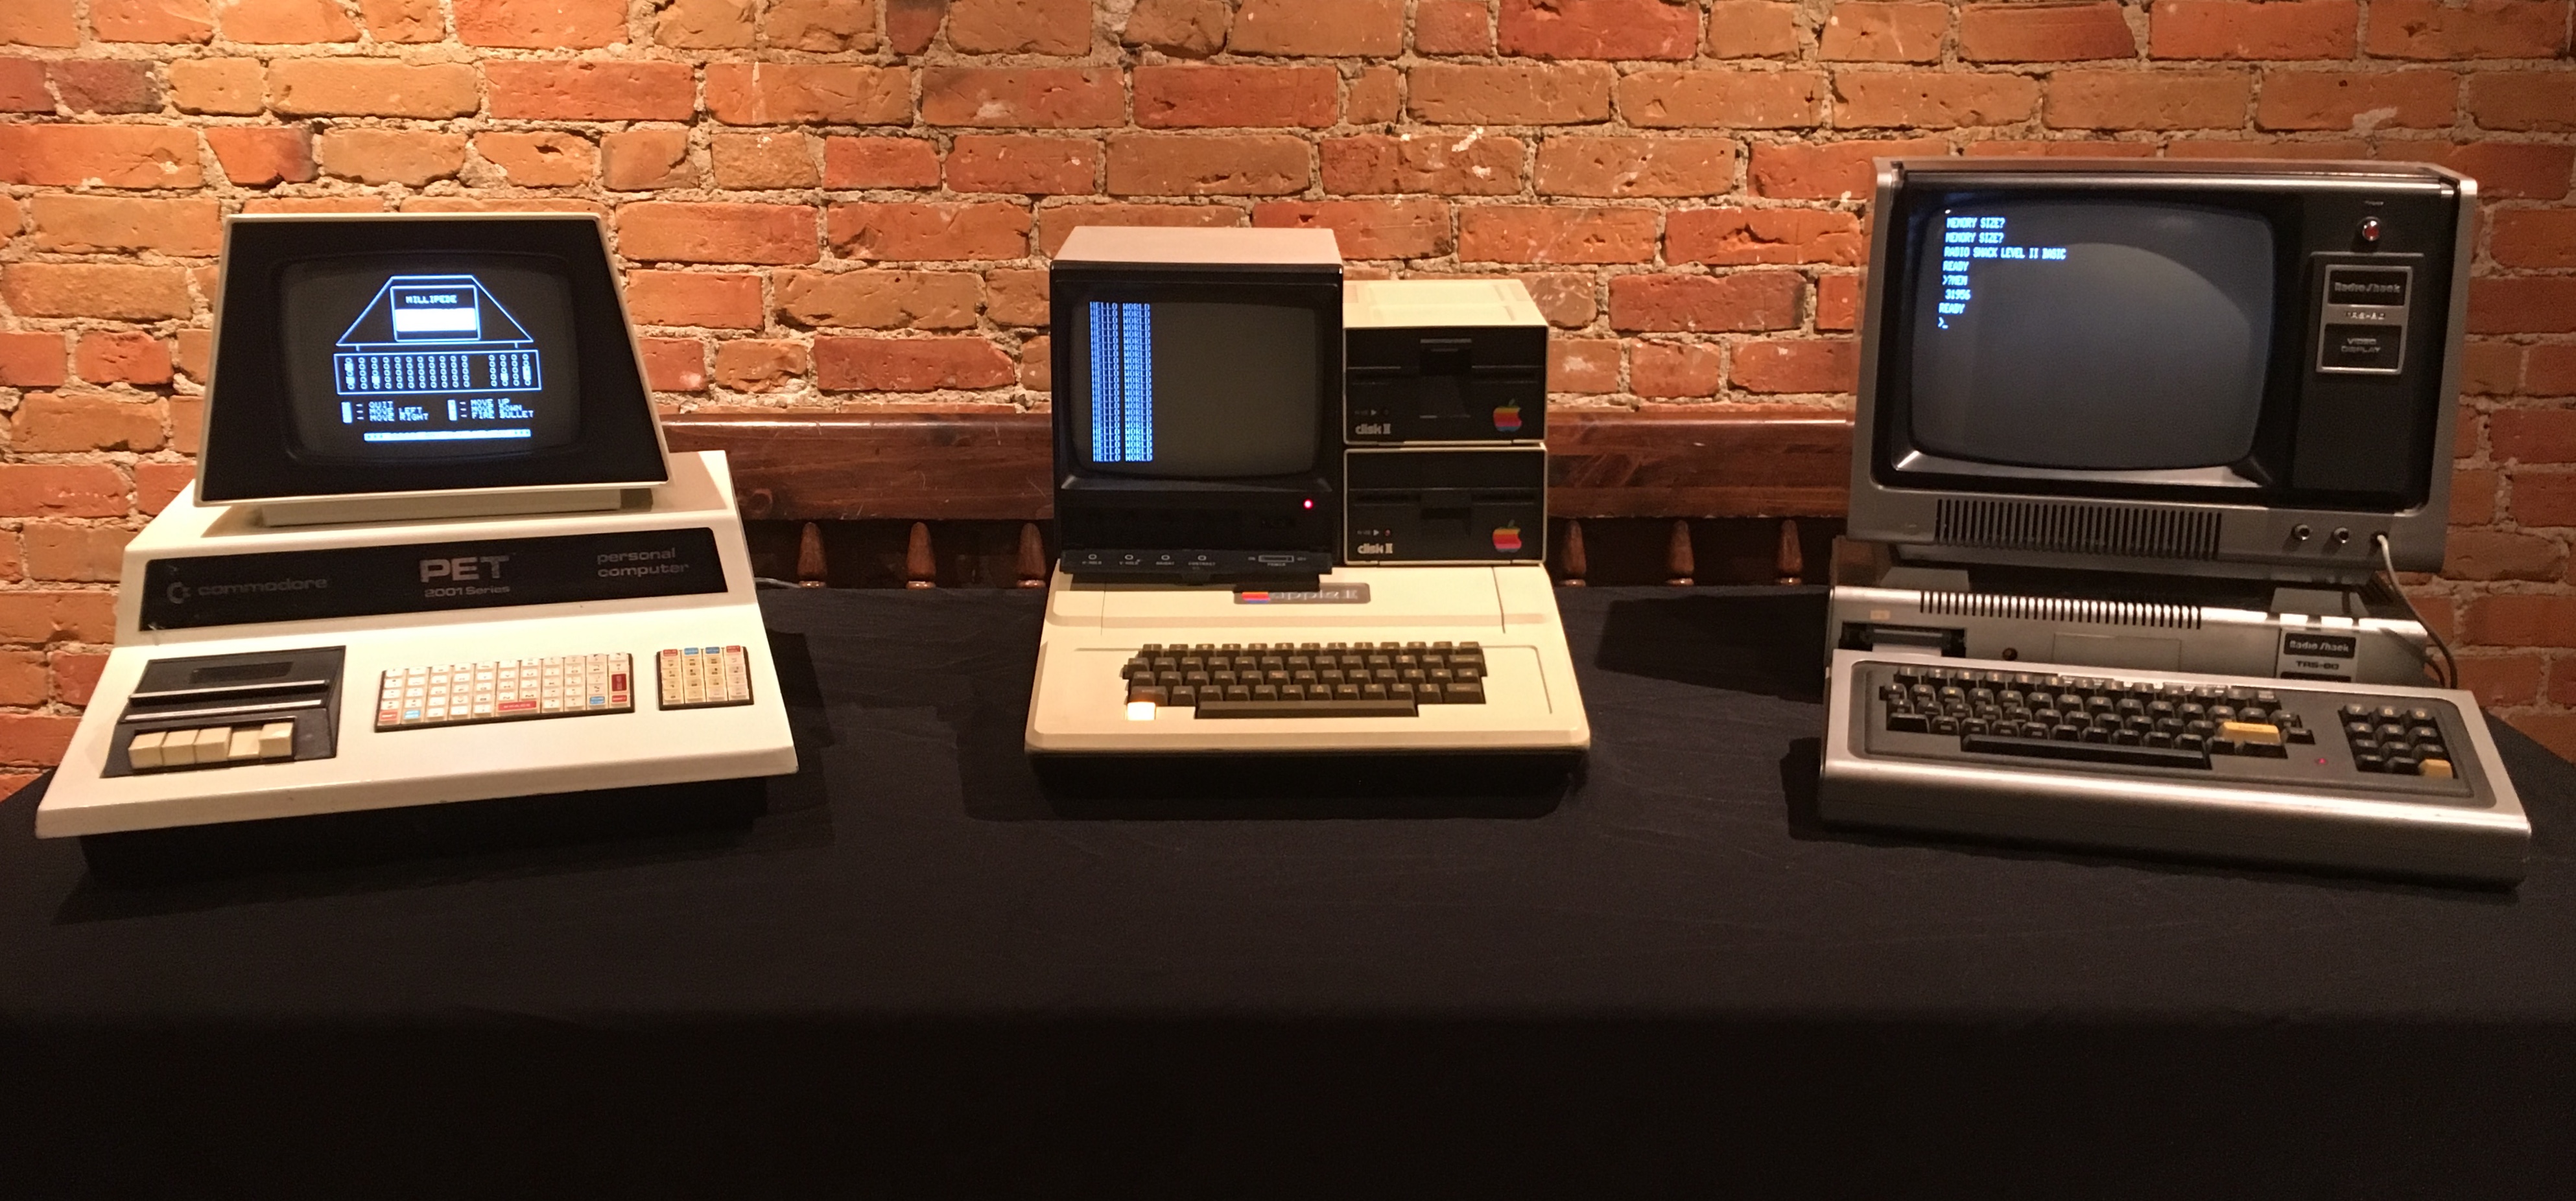 Las tres computadoras que masificaron la informática hogareña: Apple II, TRS-80 y Commodore PET